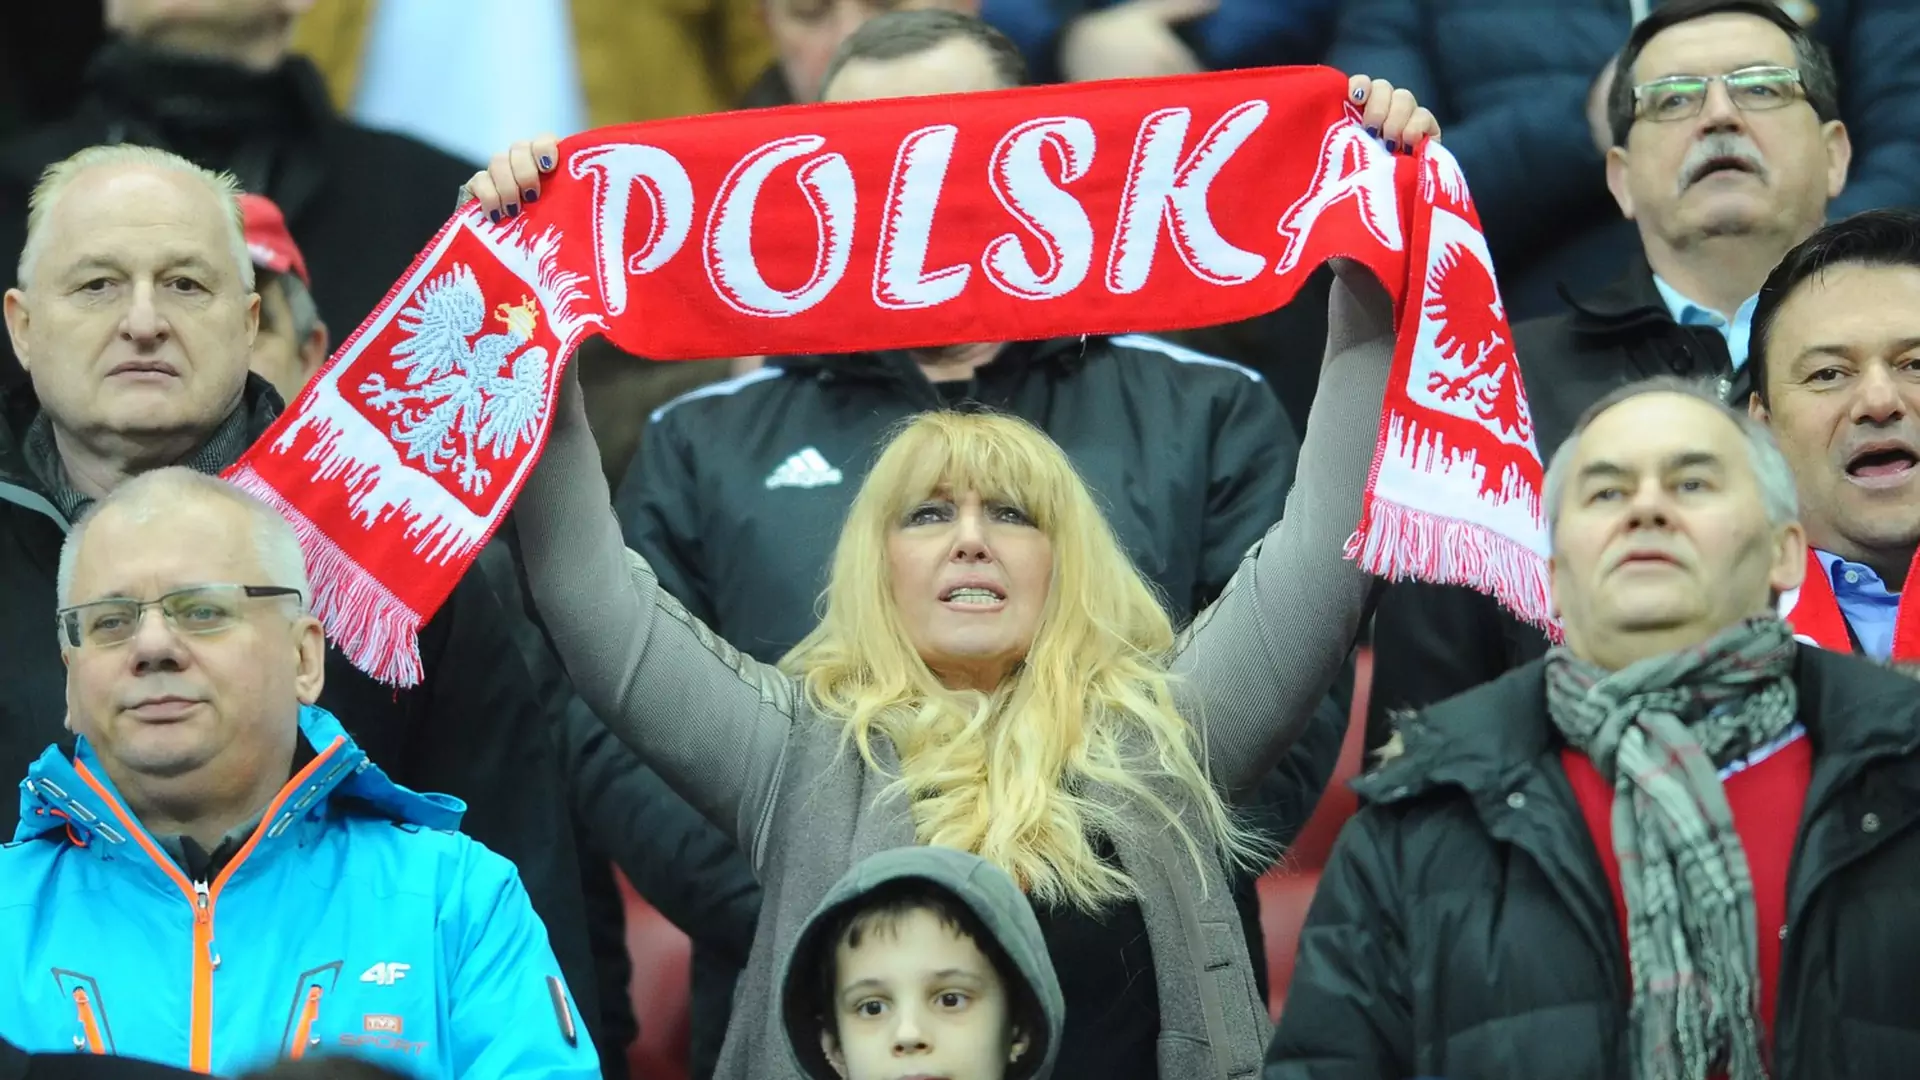 Maryla Rodowicz oceniła wczorajszy mecz Polaków. My nie komentujemy jej słów